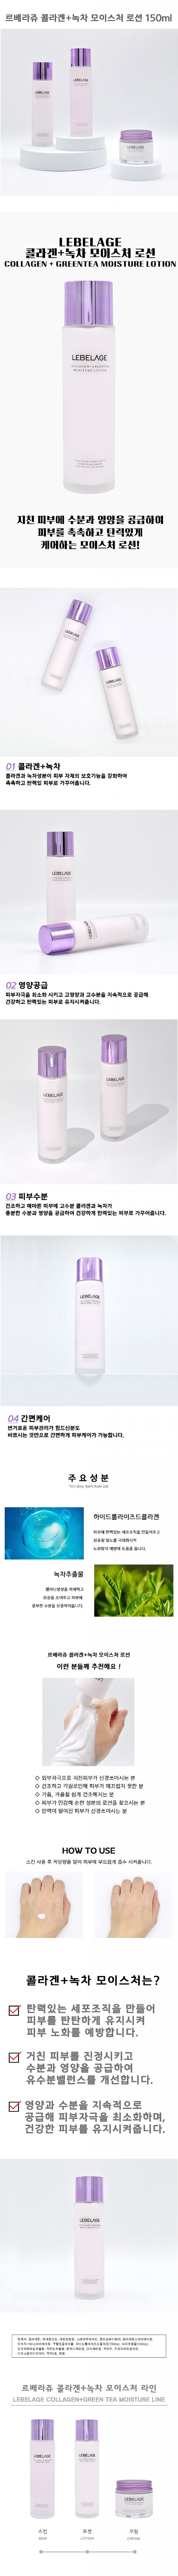 韓國 臉部保養 臉部保養 乳液 修復 臉部保養